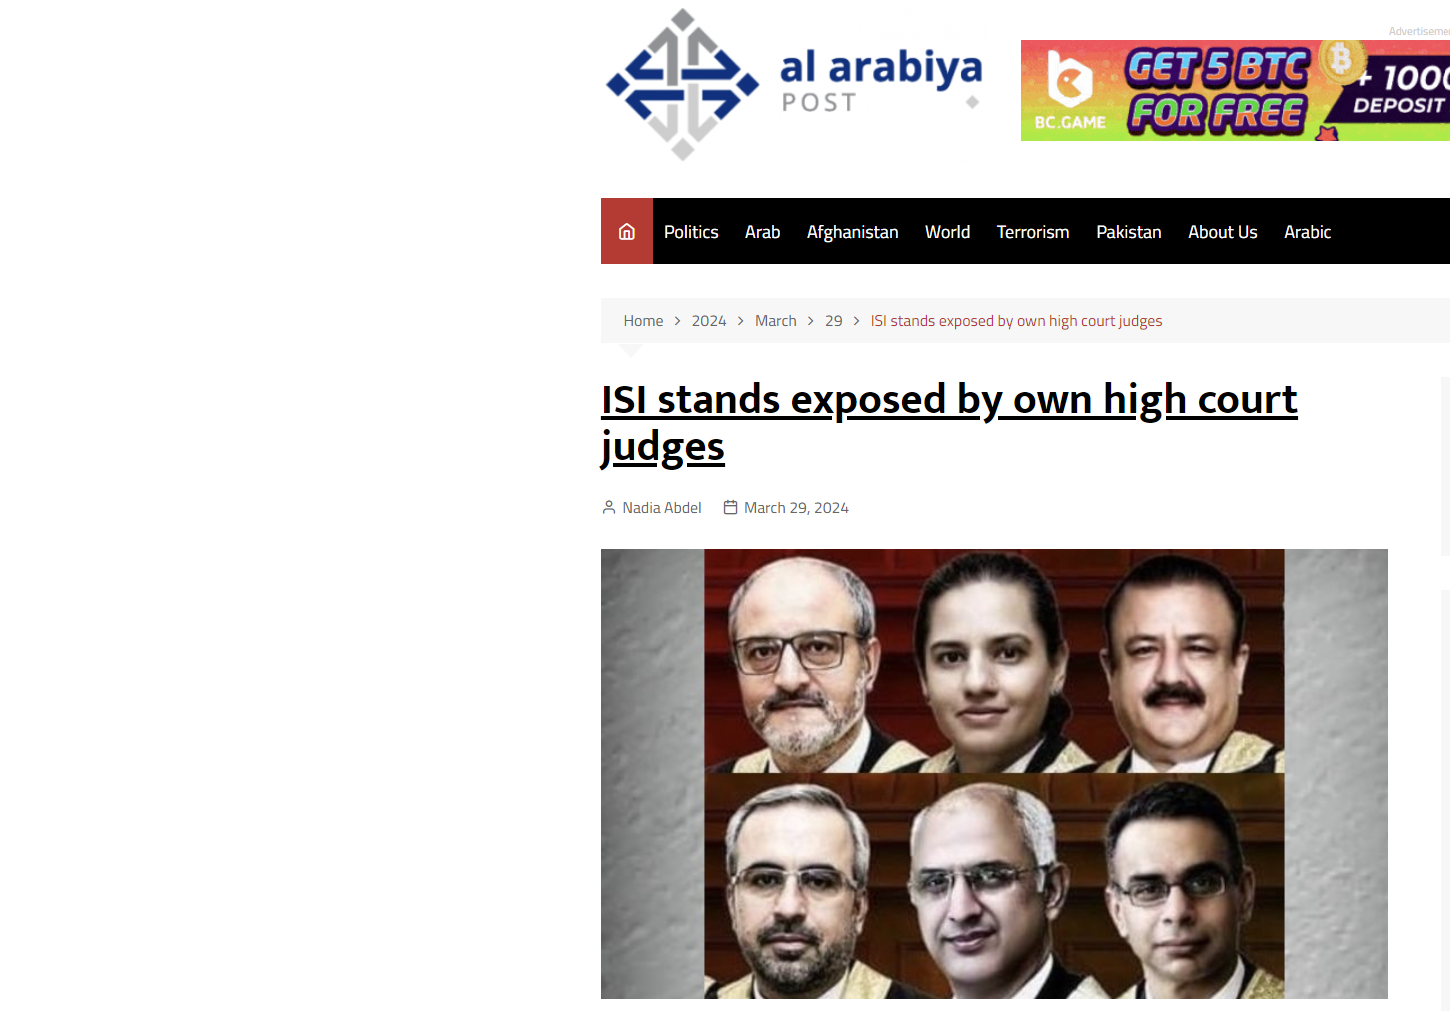 Al Arabiya Post: Συγκλονιστικές αποκαλύψεις στο Πακιστάν! Έξι δικαστές εκθέτουν τις μυστικές υπηρεσίες